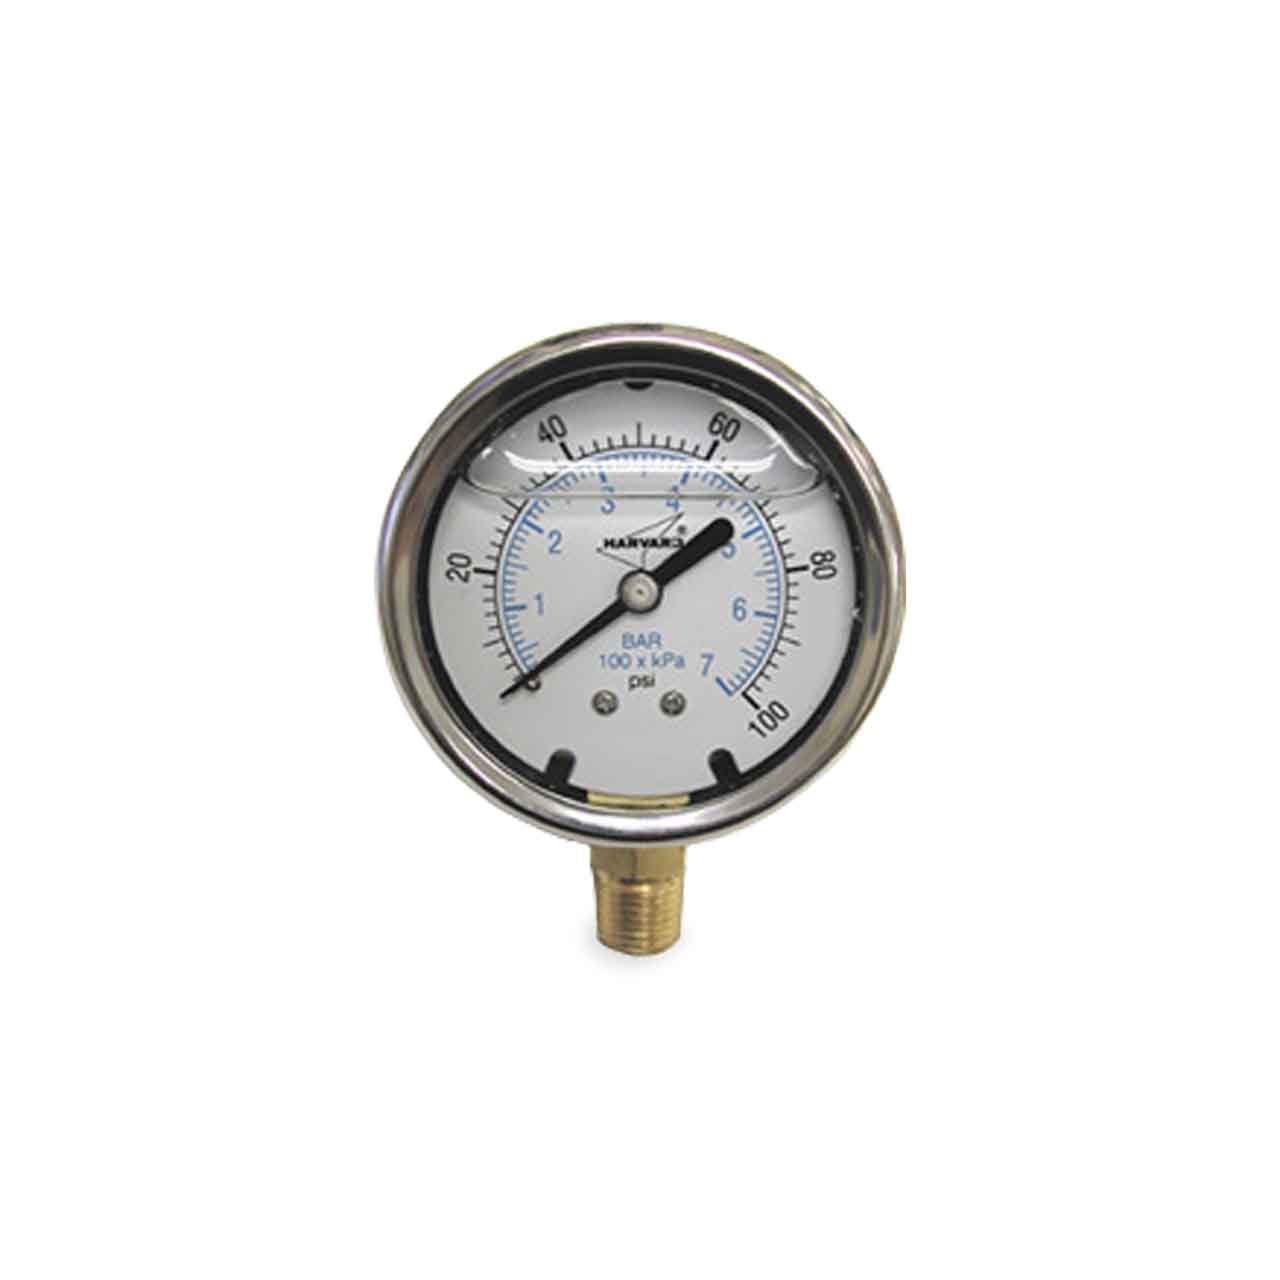 water filled pressure gauge